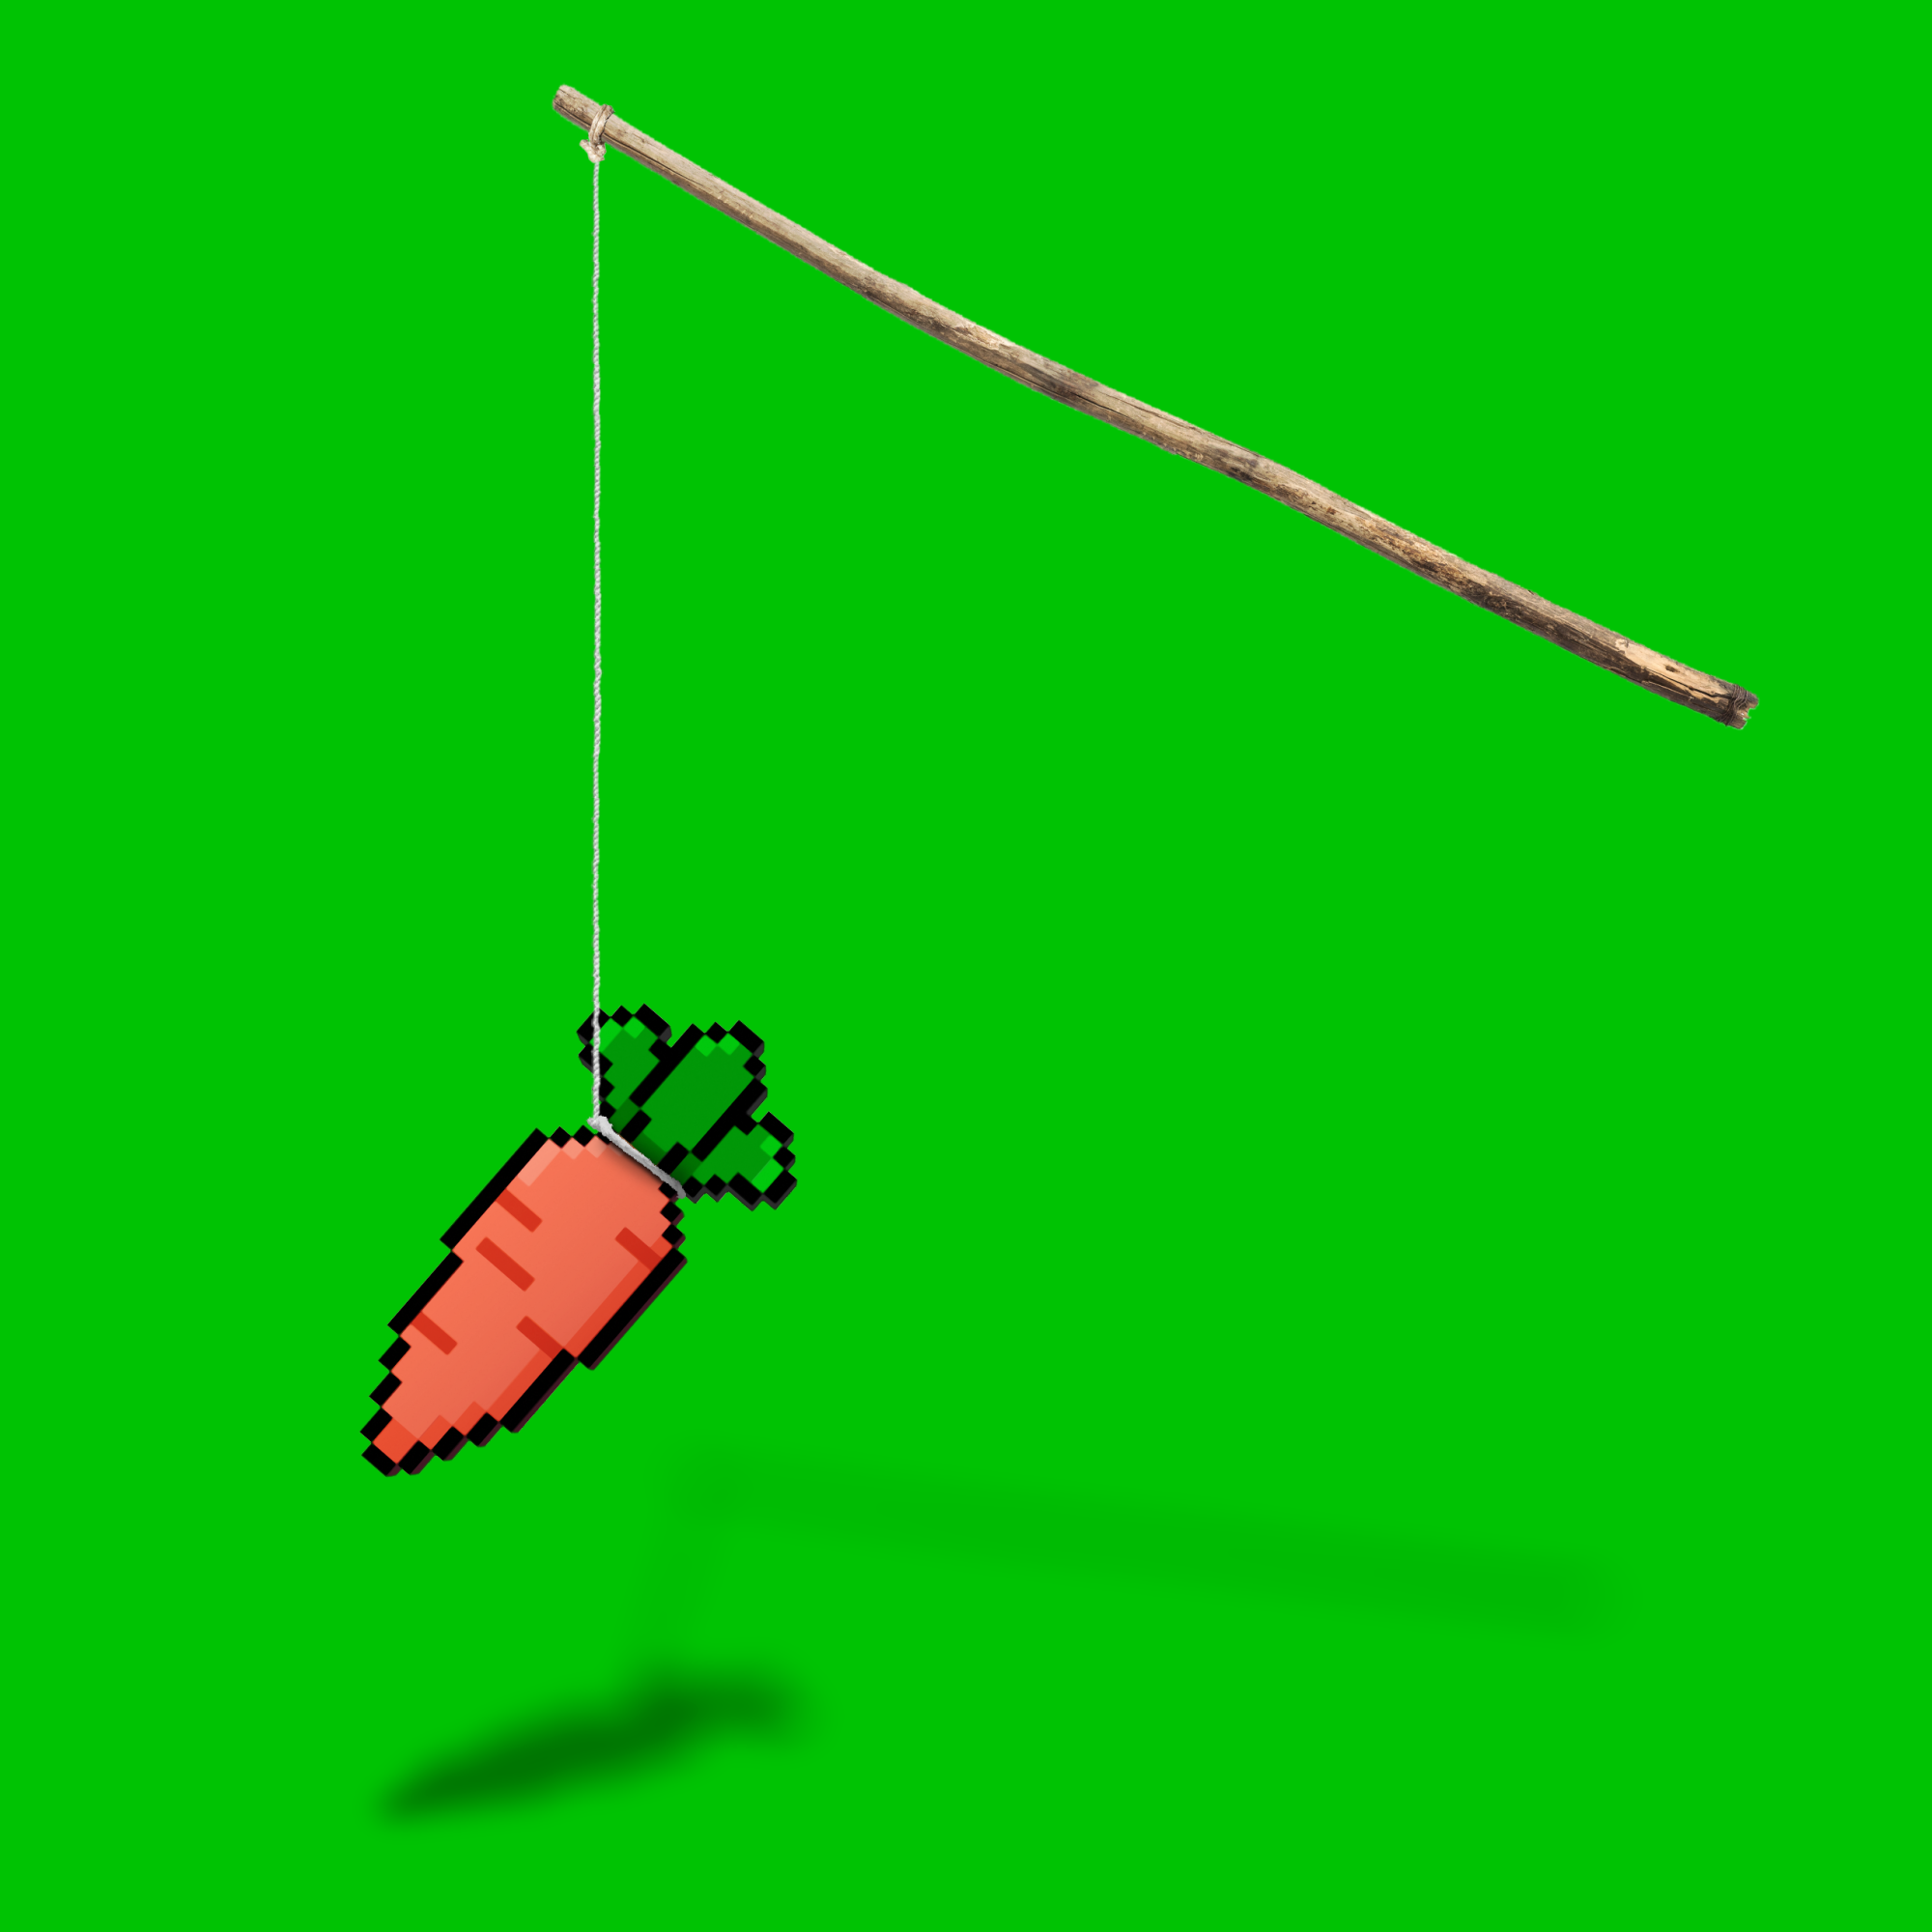 8bit carrot dangling from a stick